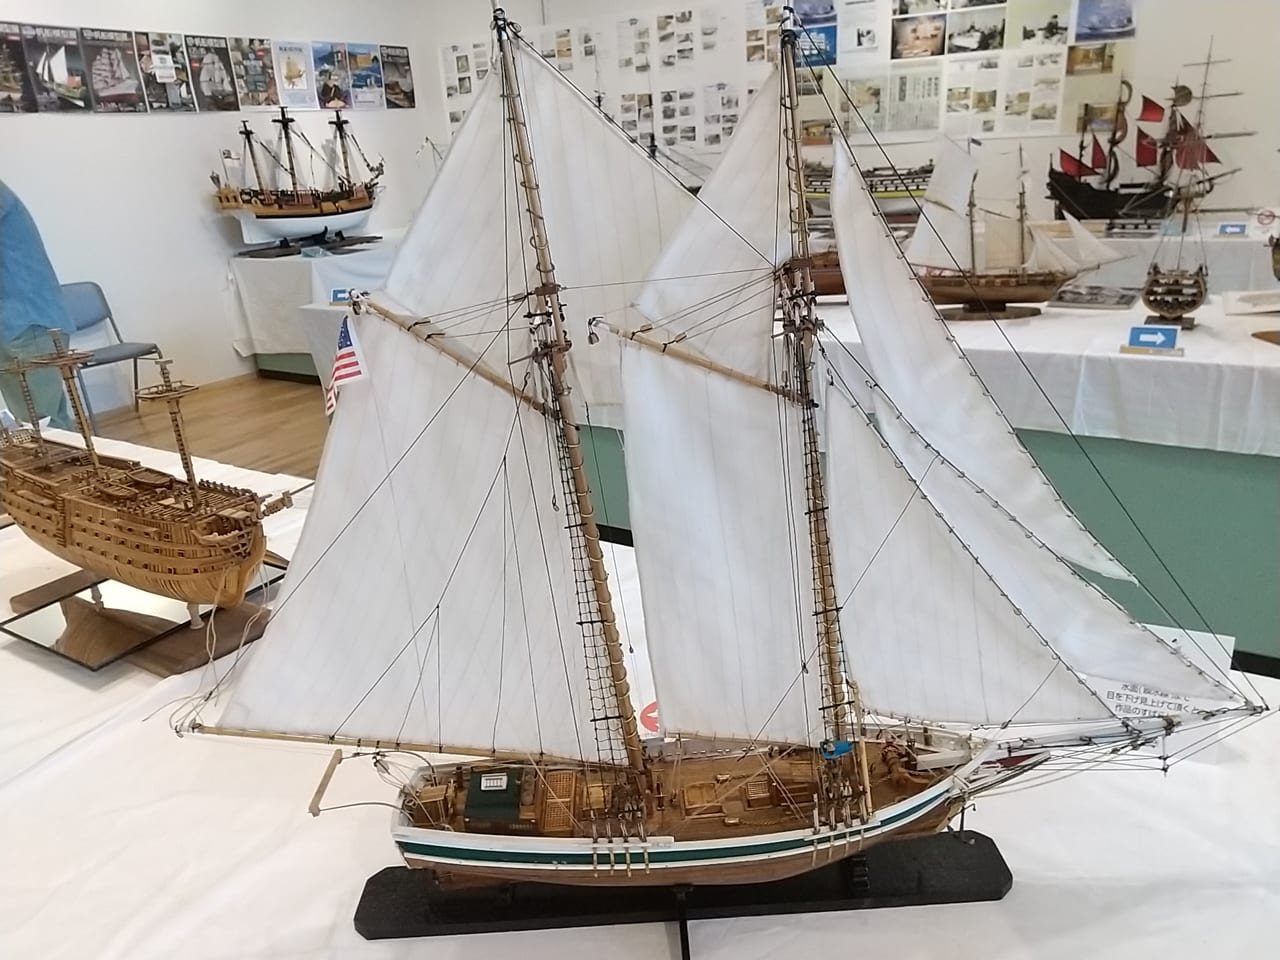 東広島芸術文化ホールくらら「市民ギャラリー」にて「帆船模型展」が開催